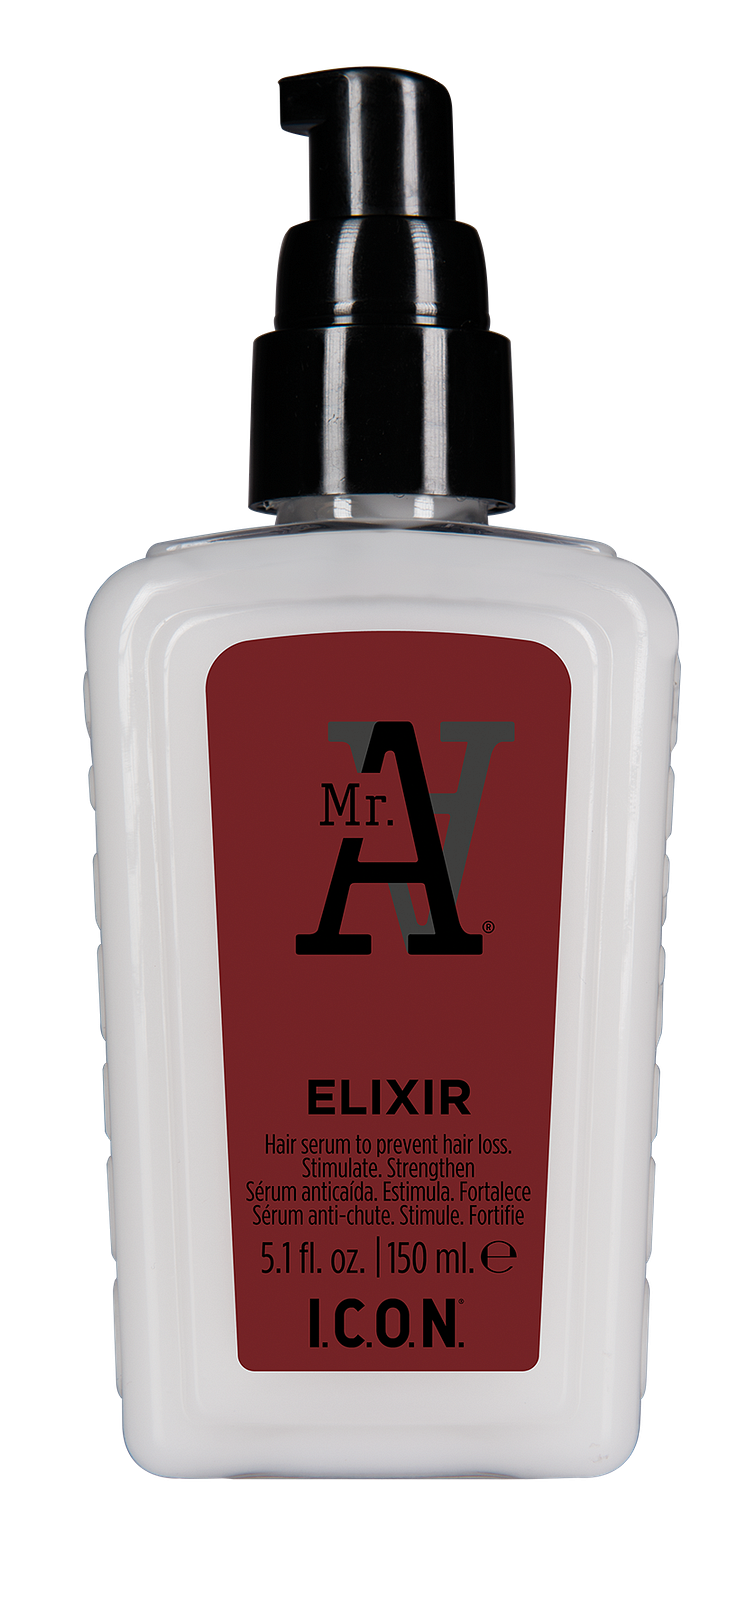 Mr.A Elixir